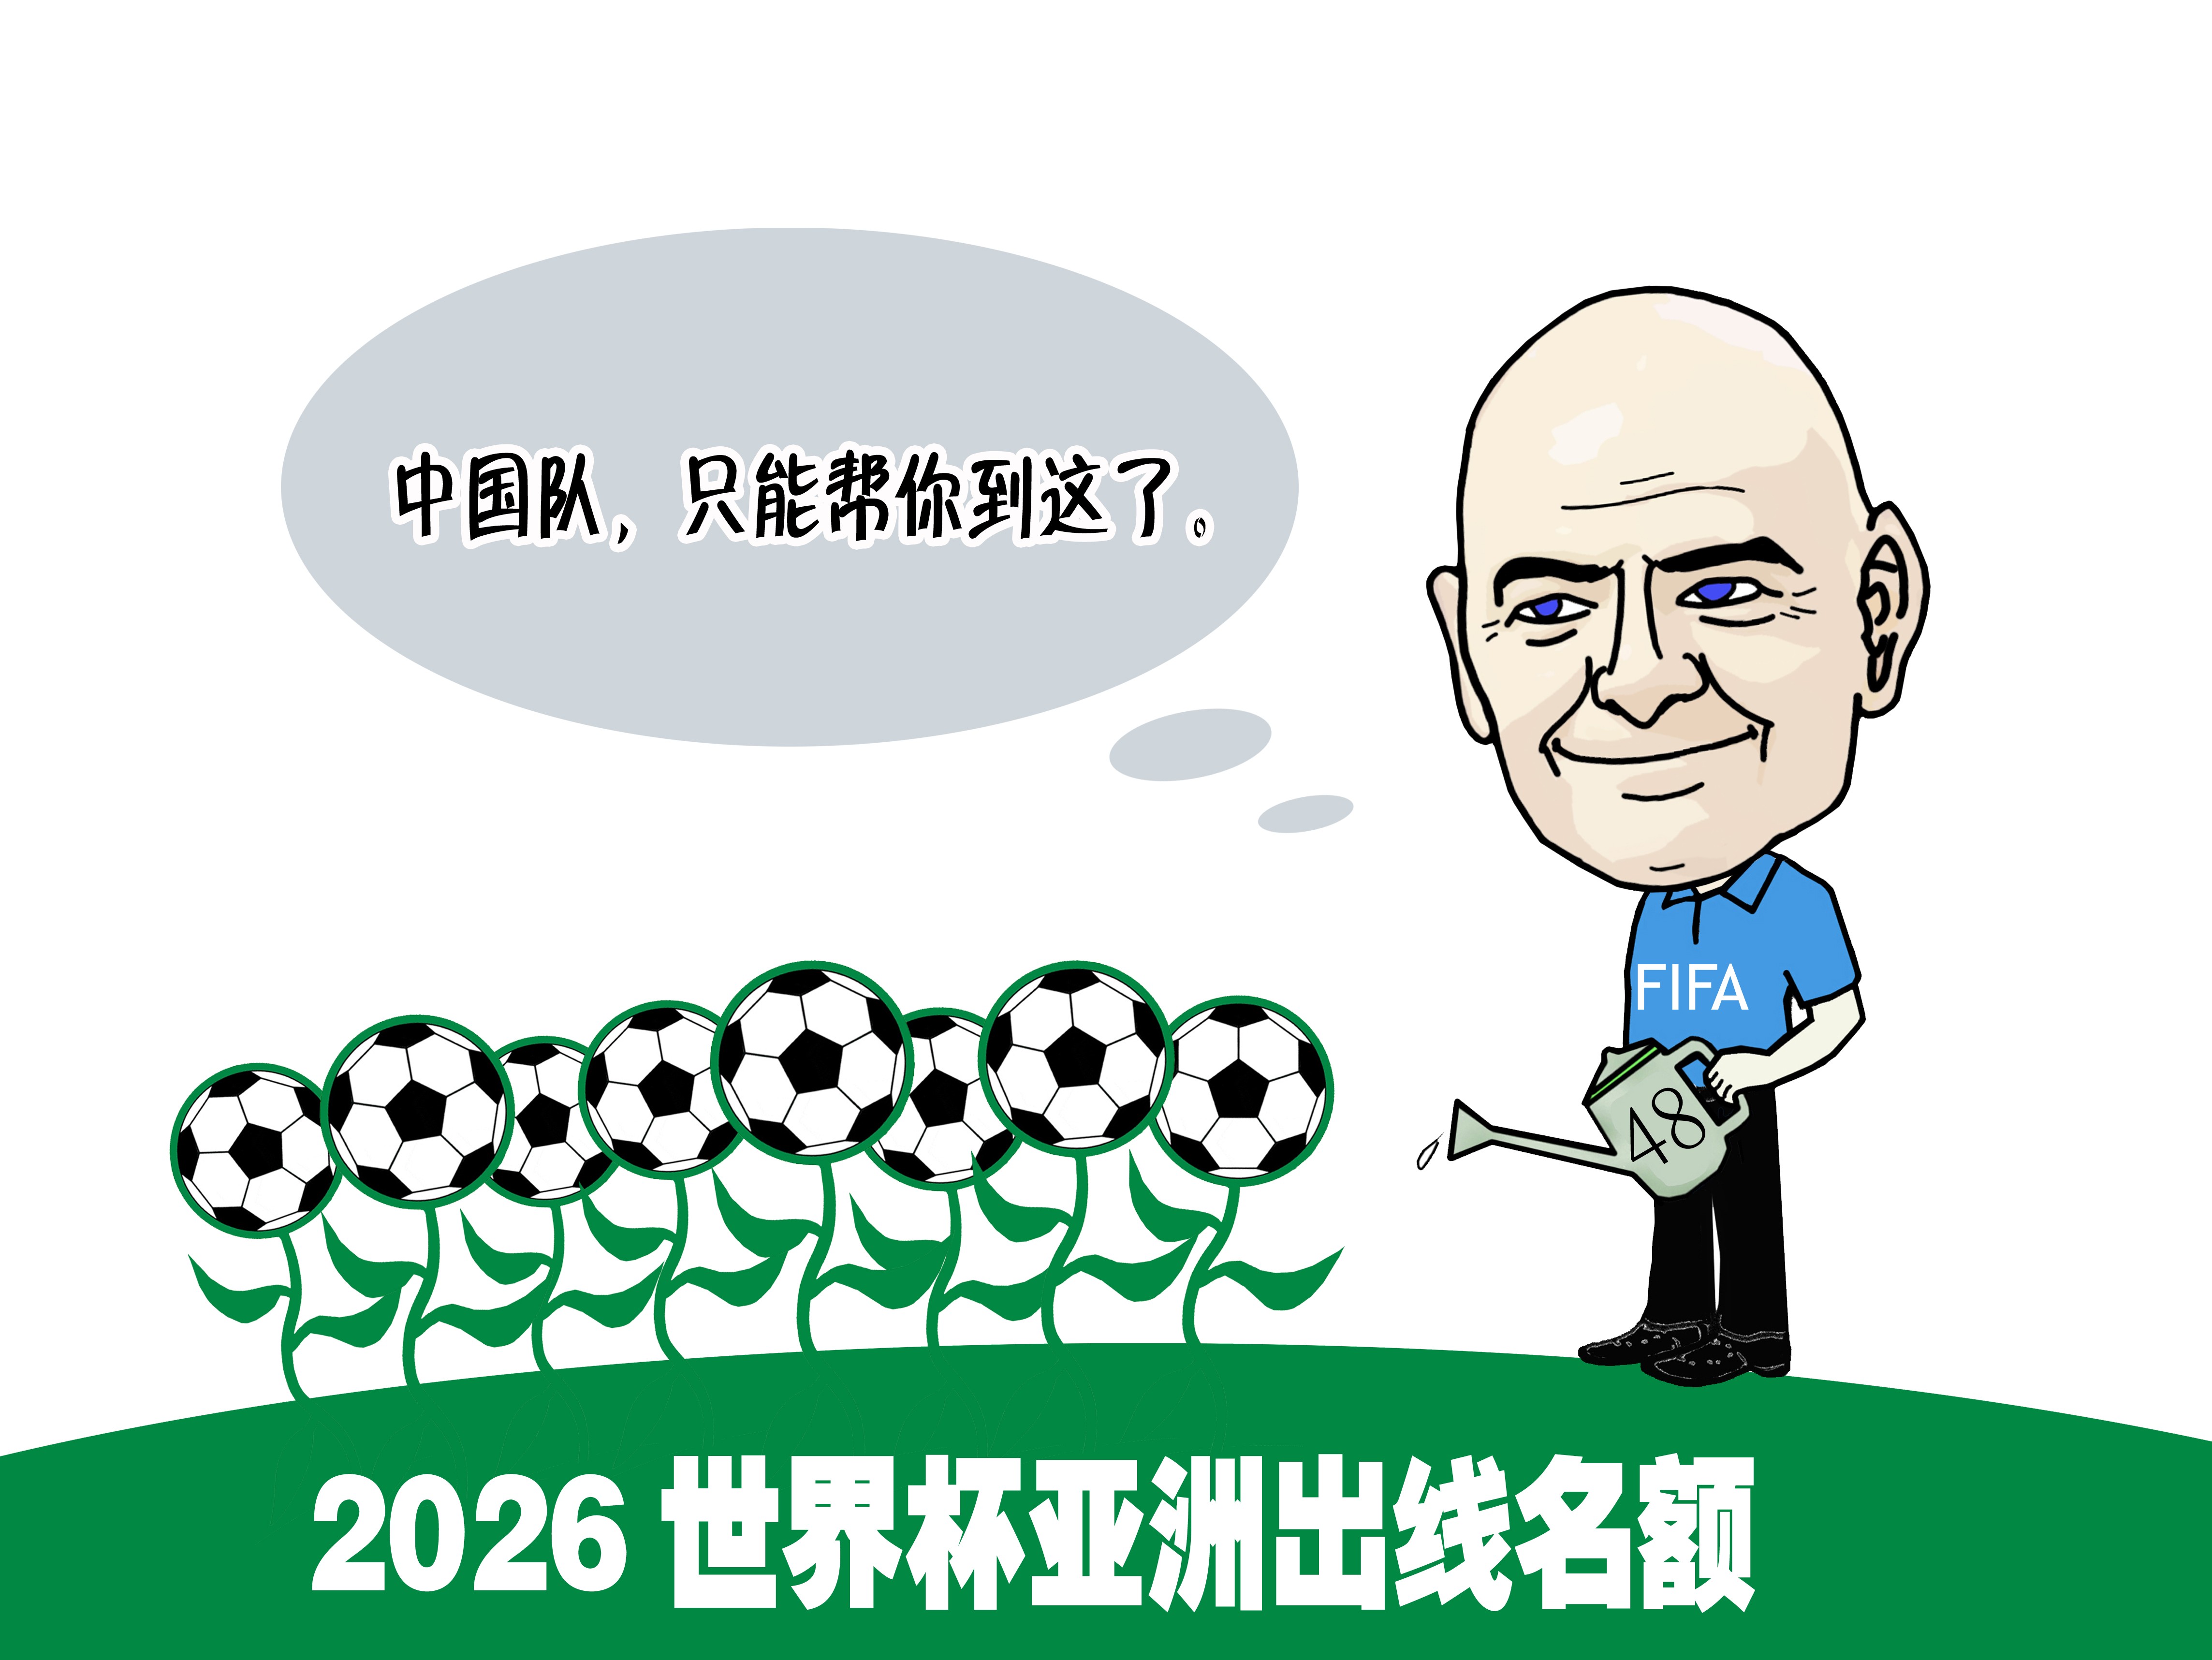 华商报:国足很难进2026世界杯 - 专业权威的足